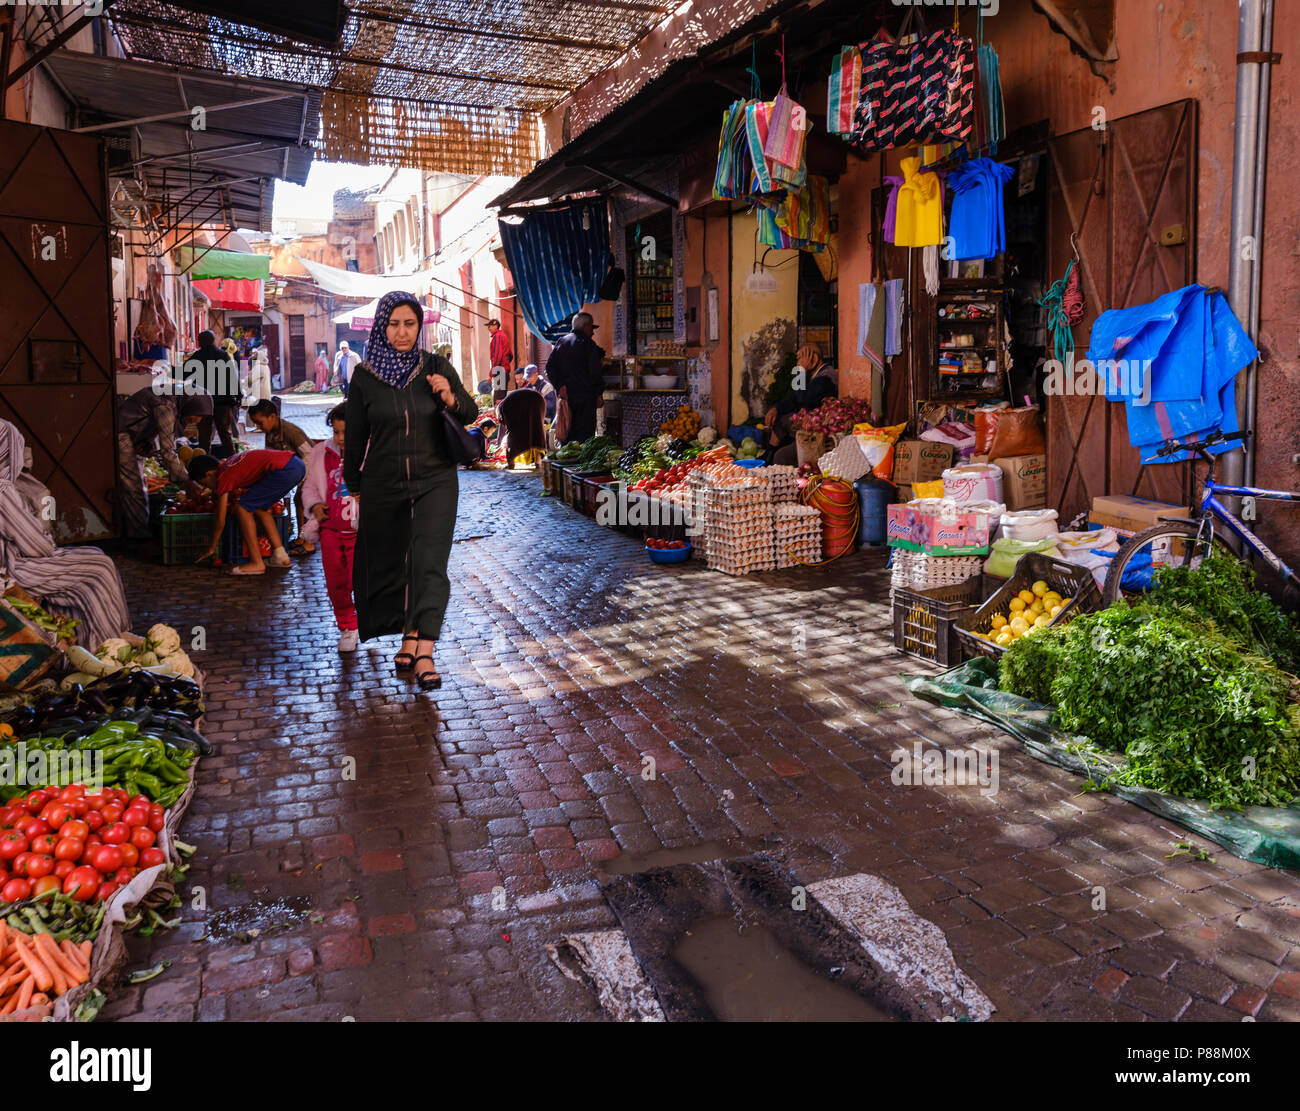 Marrakech, Marocco - circa aprile 2017: Rue Bab Doukkala in Marrakech. Si tratta di una area locale vicino alla Medina. Foto Stock